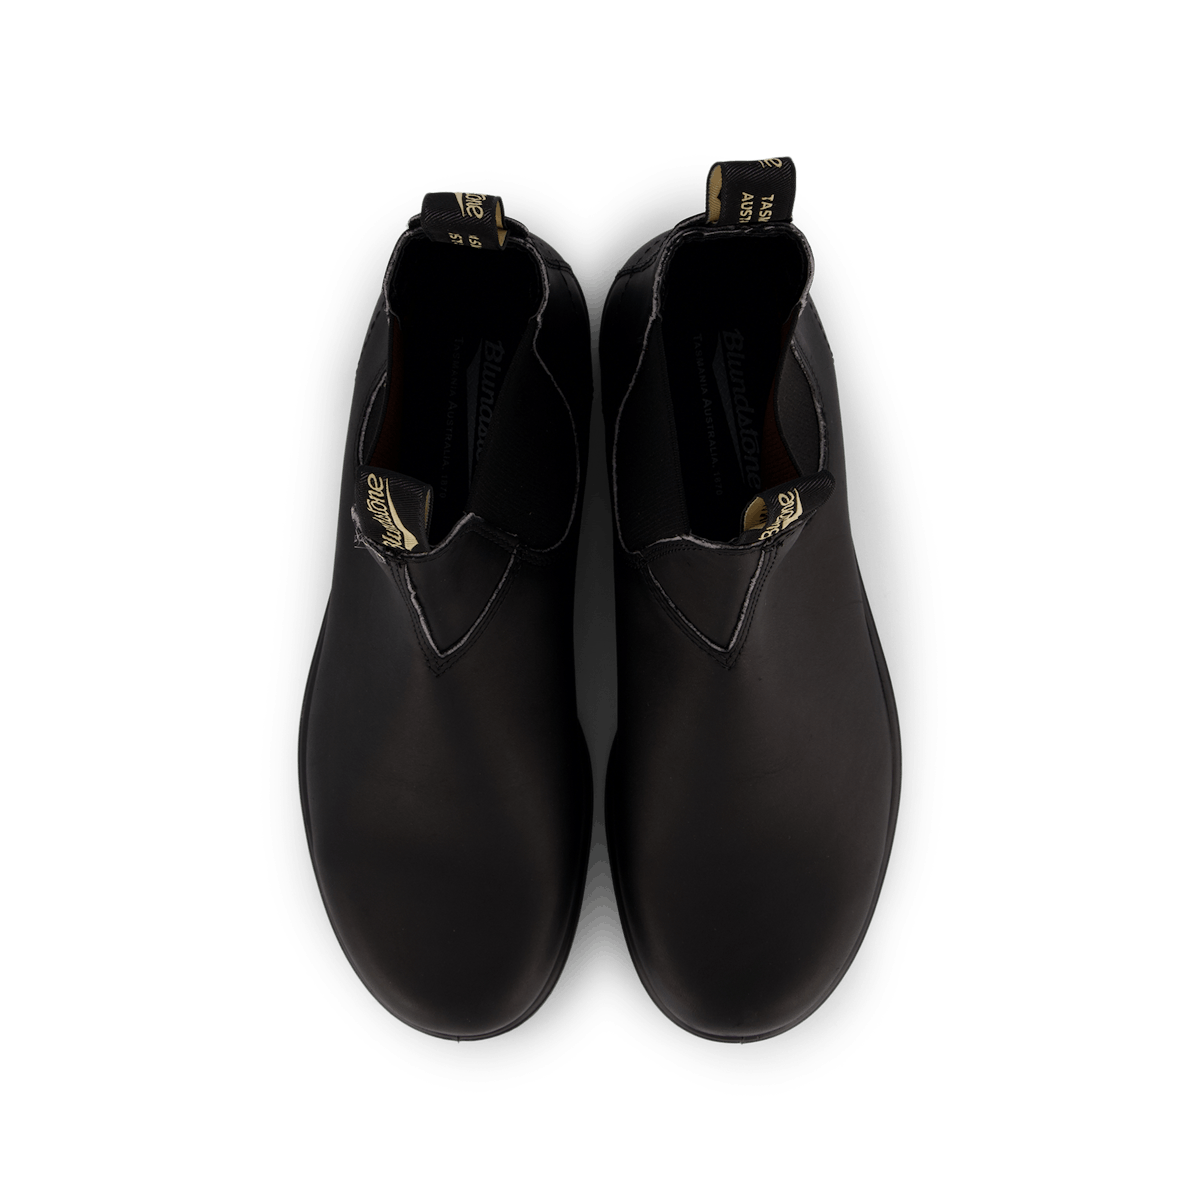 BL 510 Originals Chelsea Boot Black